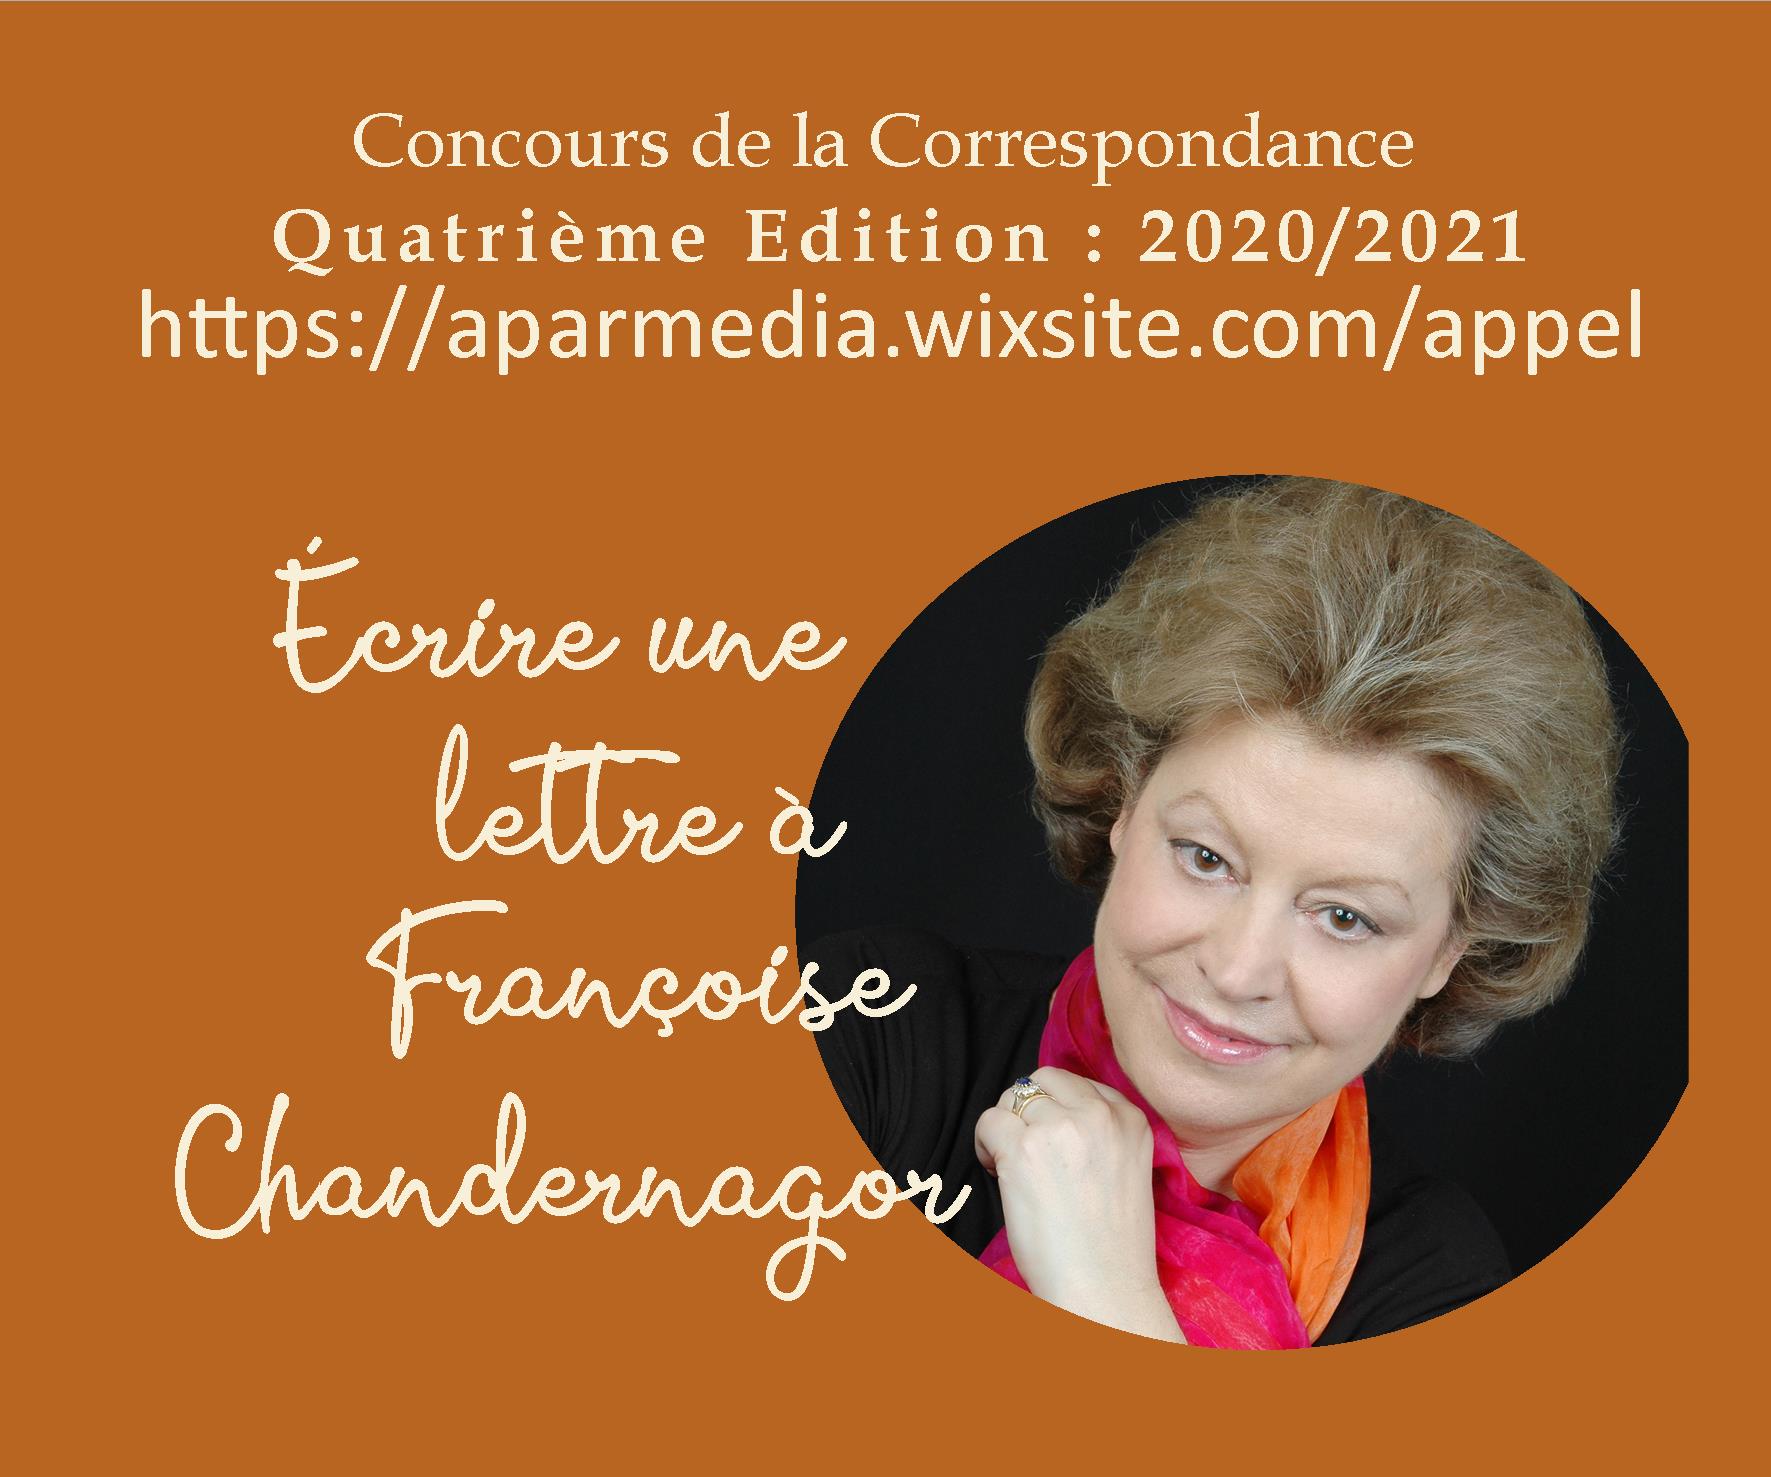 Françoise Chandernagor, marraine du Concours de la correspondance